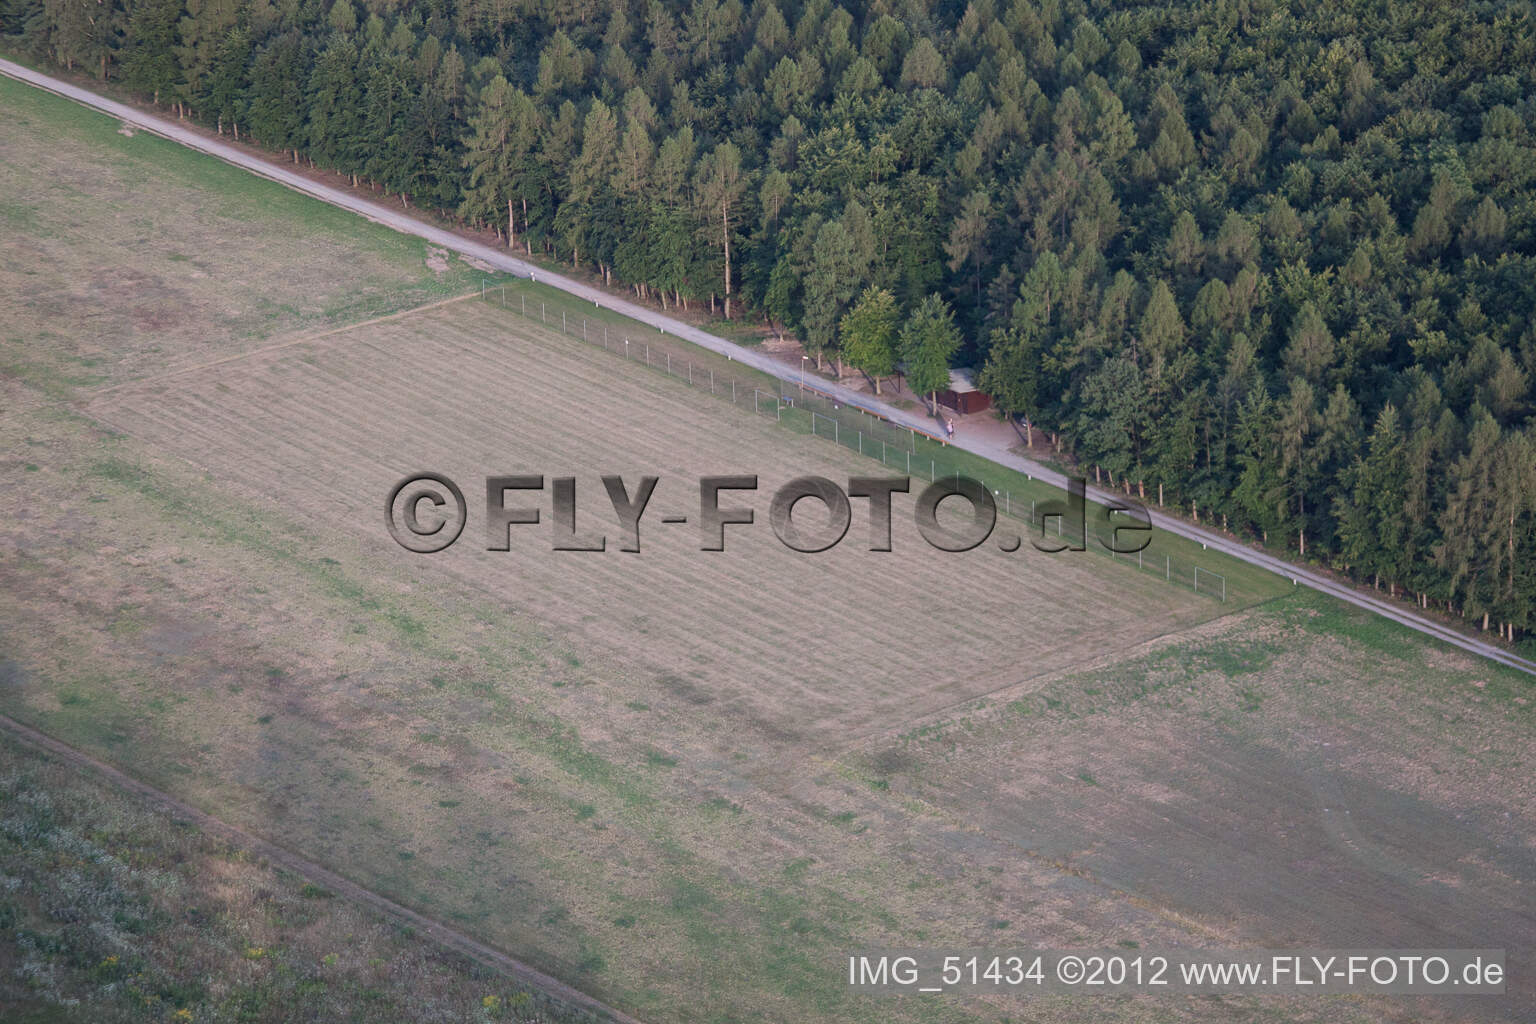 Vue aérienne de Aérodrome modèle à Rülzheim dans le département Rhénanie-Palatinat, Allemagne